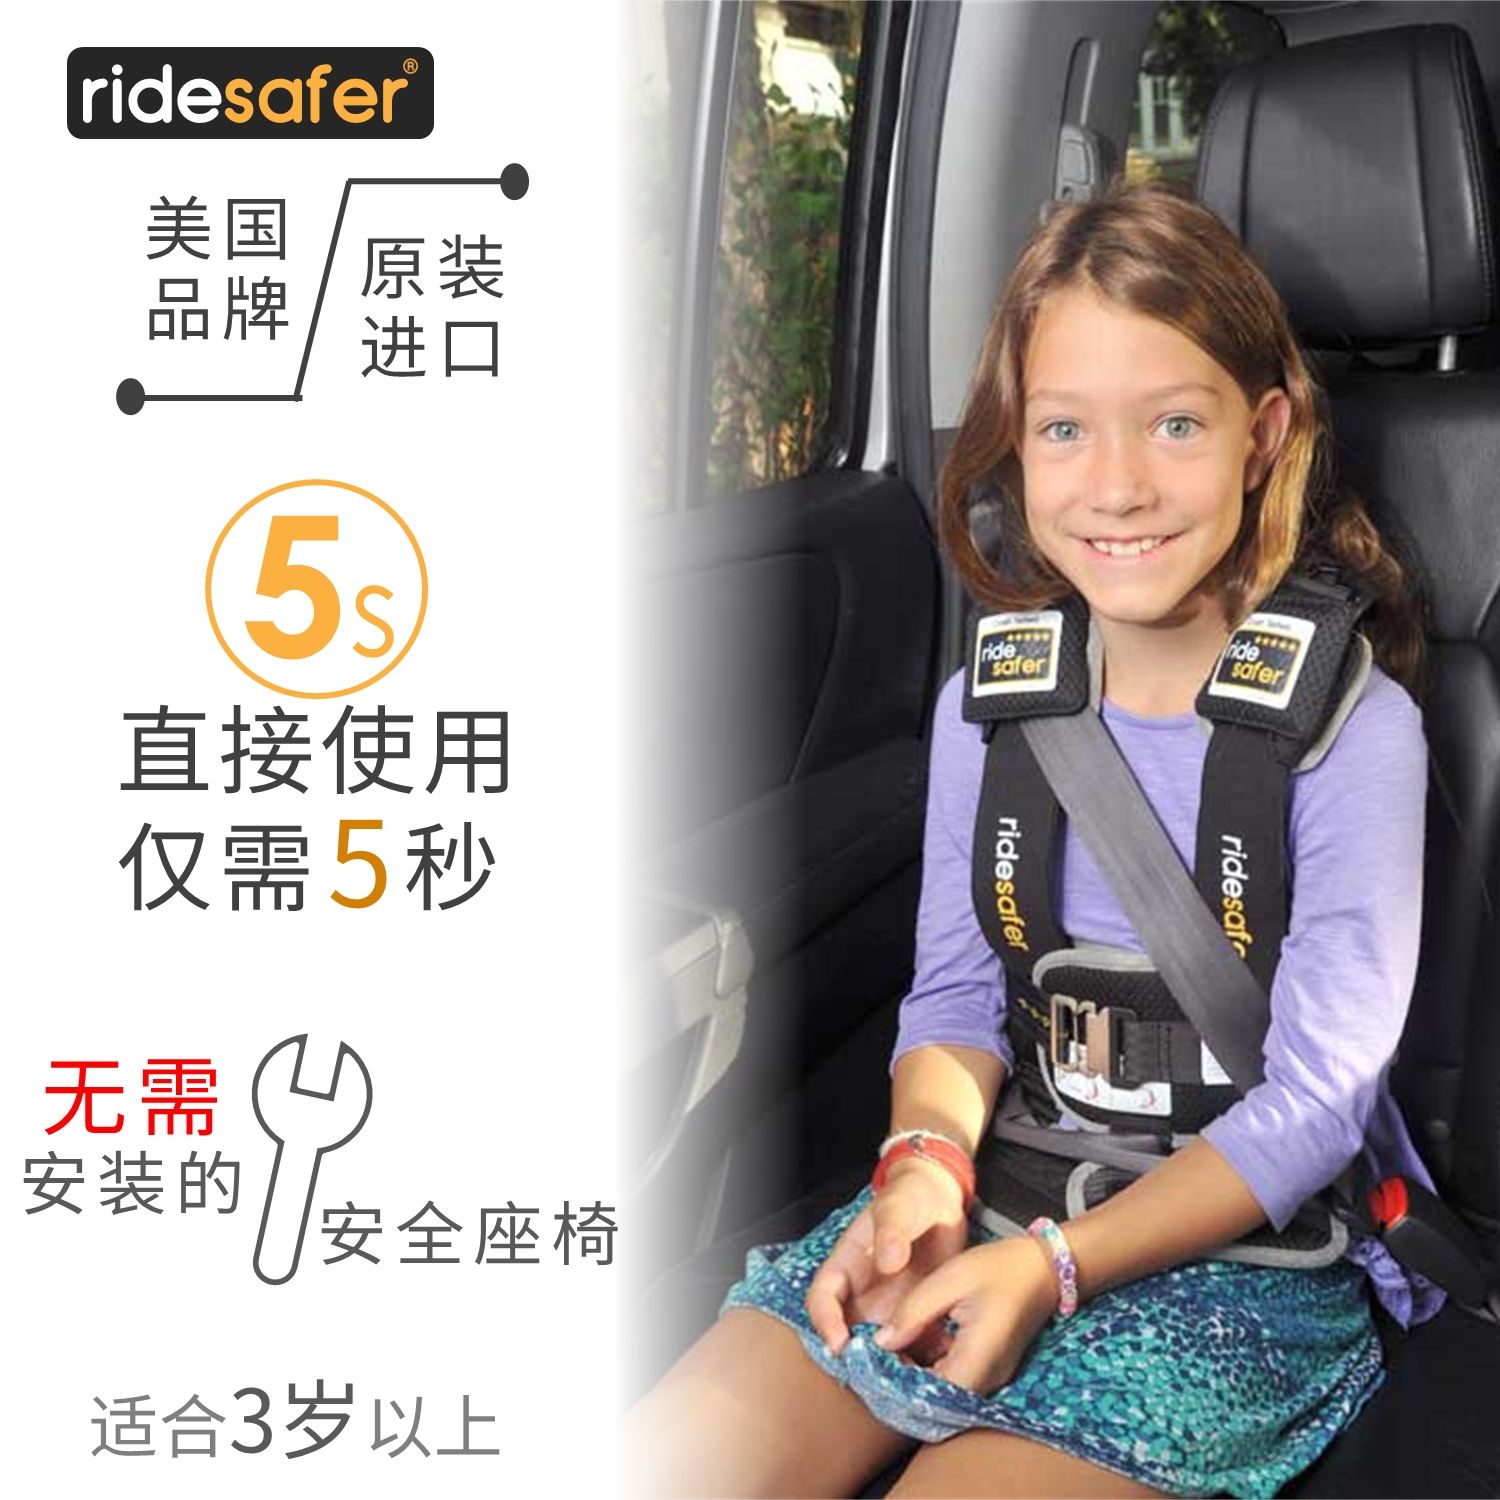 进口美国RideSafer艾适儿童穿戴便携式汽车简易安全座椅3-12岁